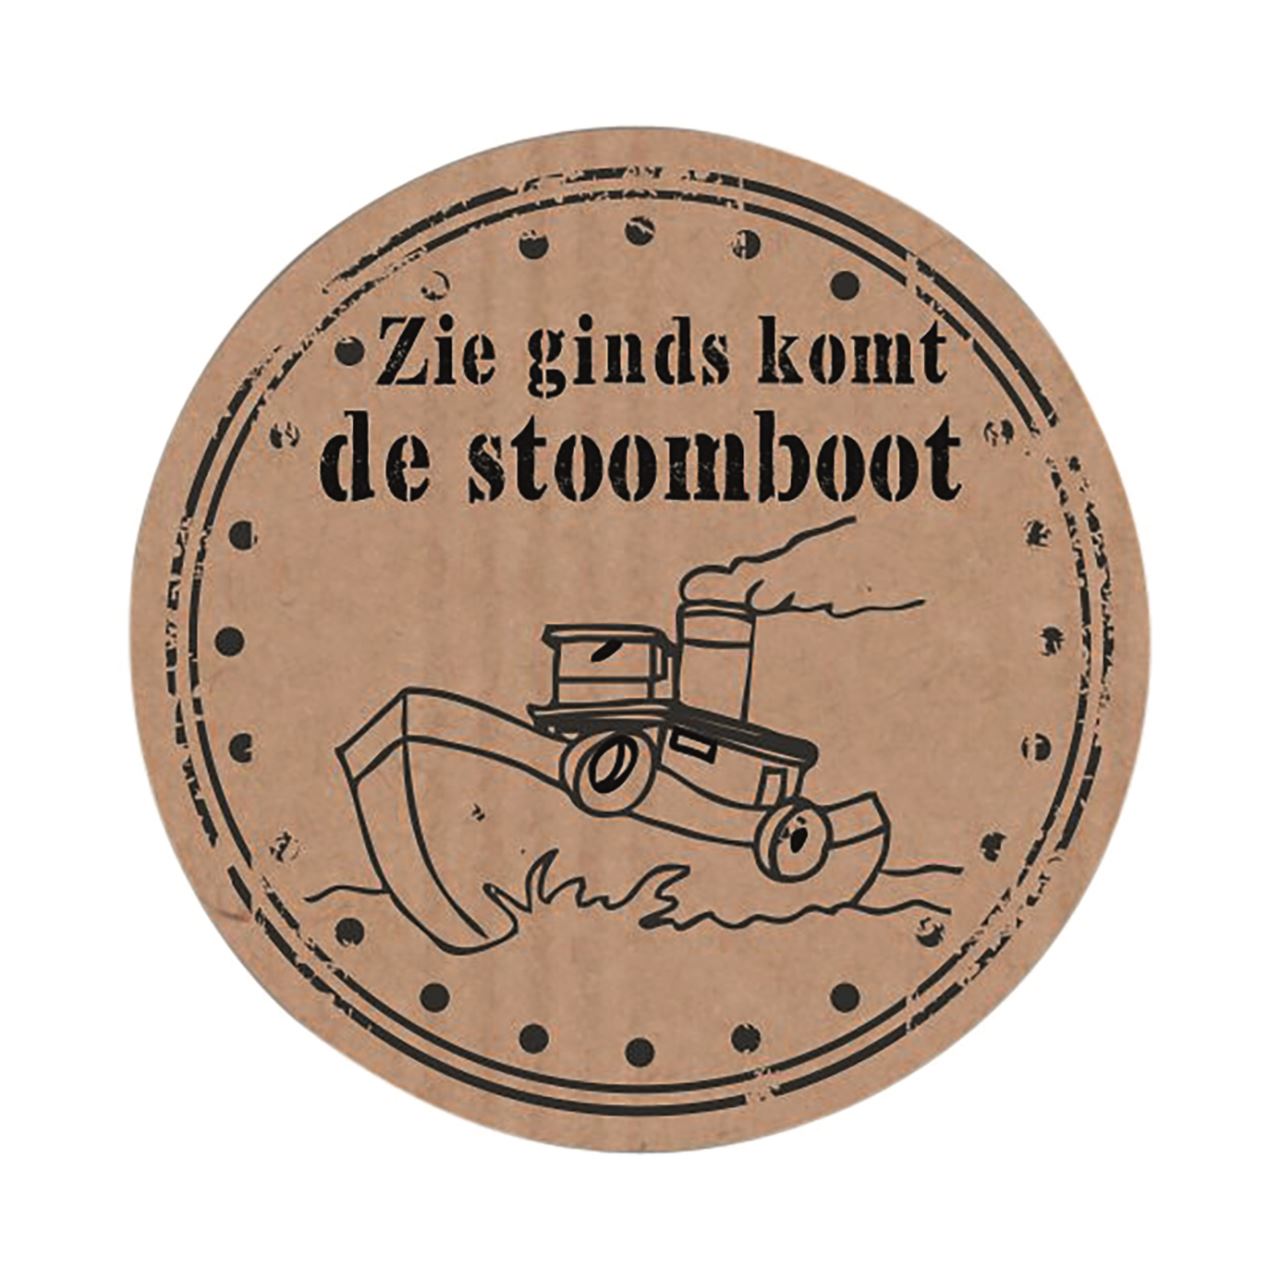 Picture of Ds à 500 Sint etiket 3,5 cm Zie ginds komt ... 